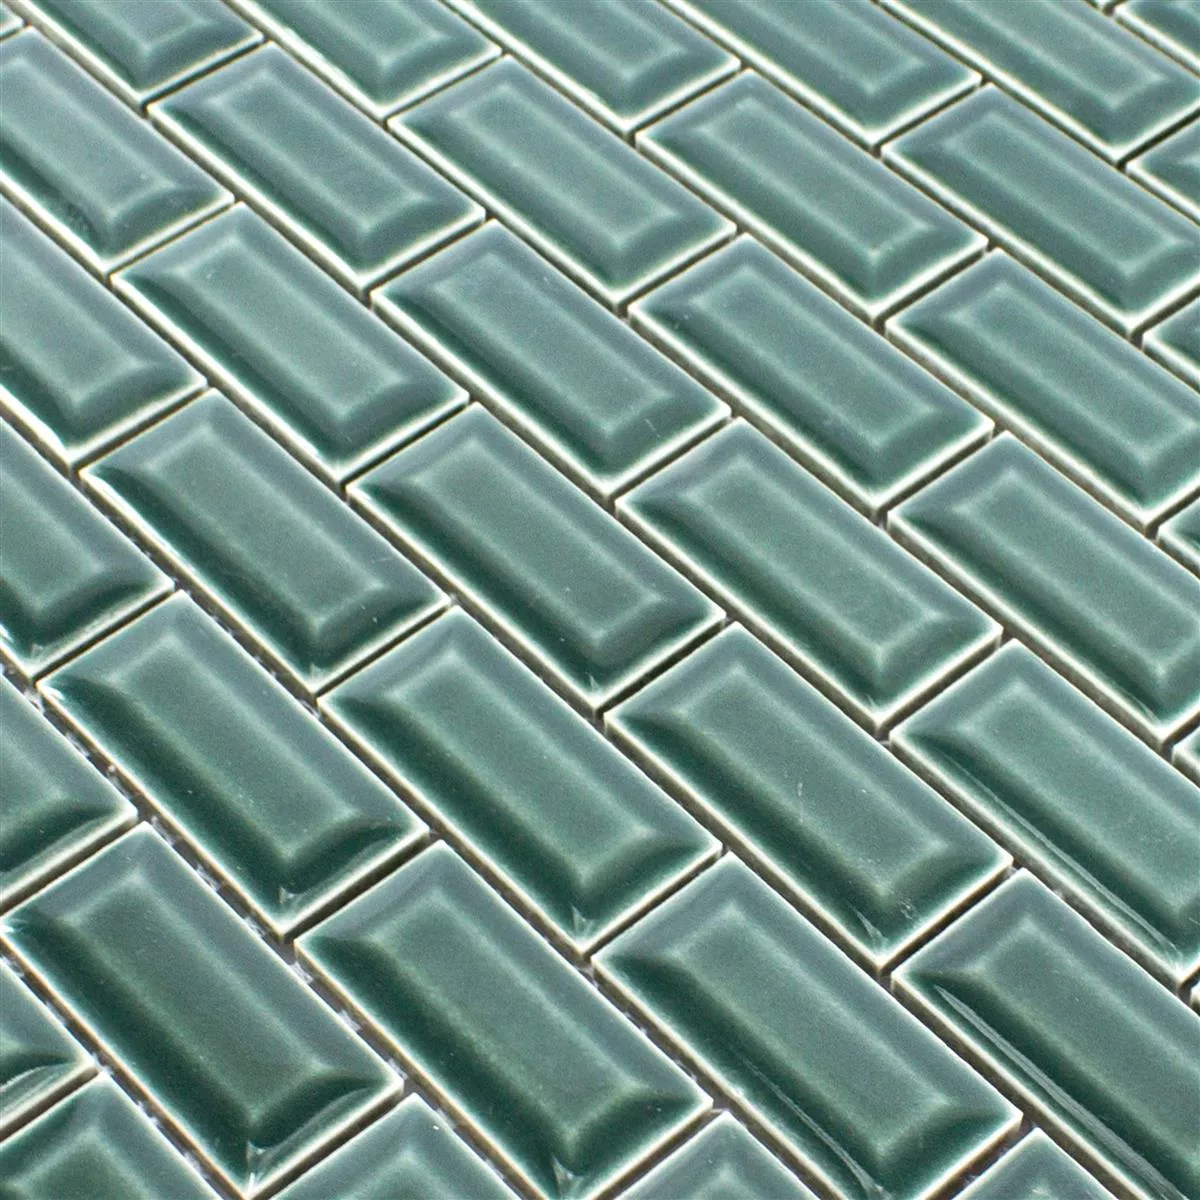 Campione Ceramica Mosaico Piastrelle Organica Metro Verde